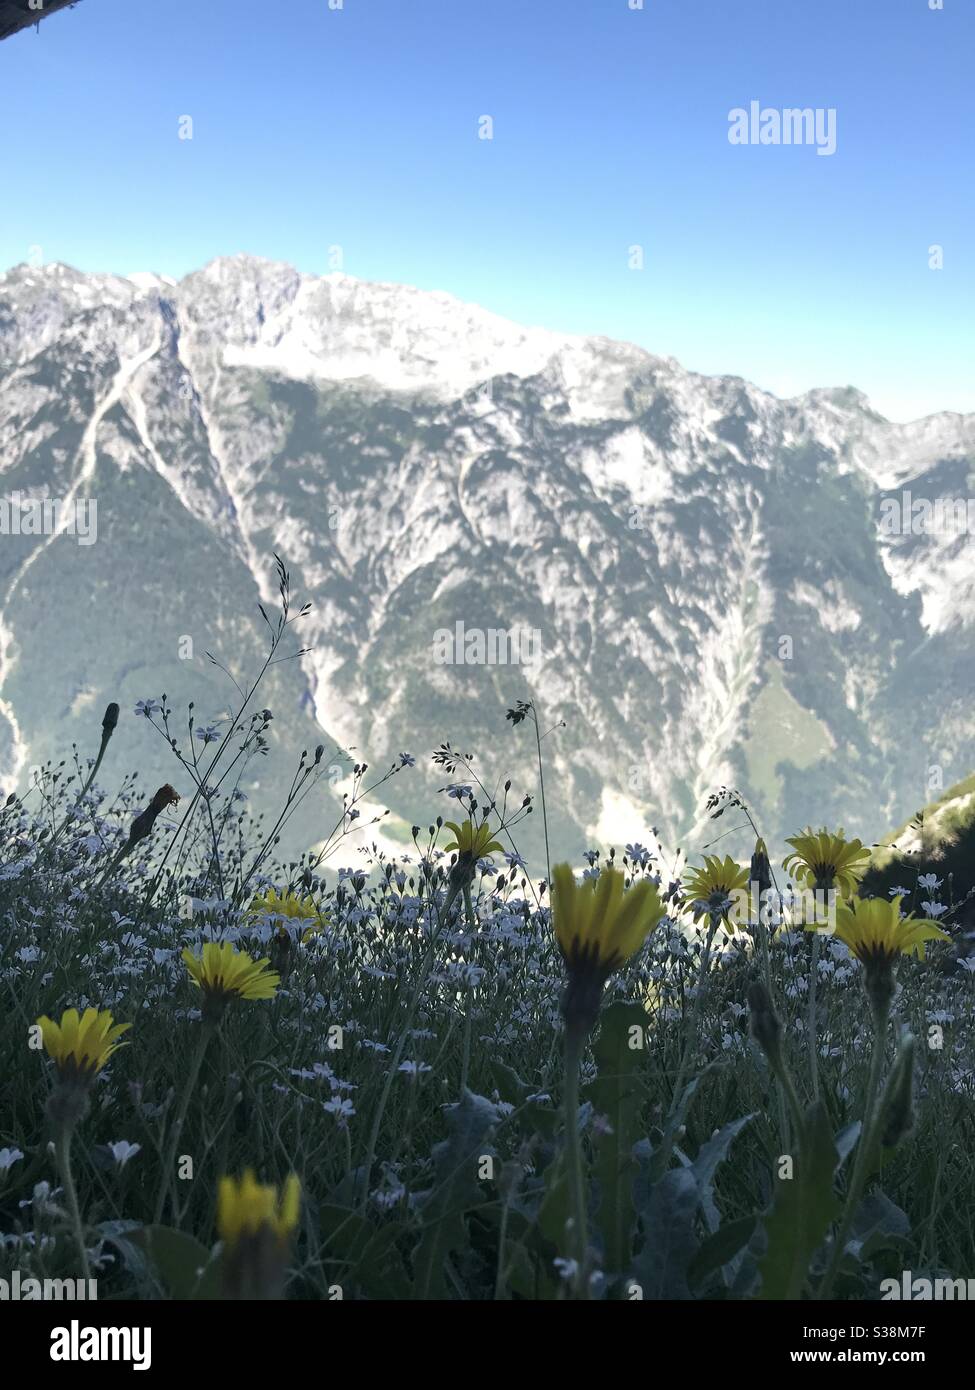 Day in Austria Alps mountains Stock Photo